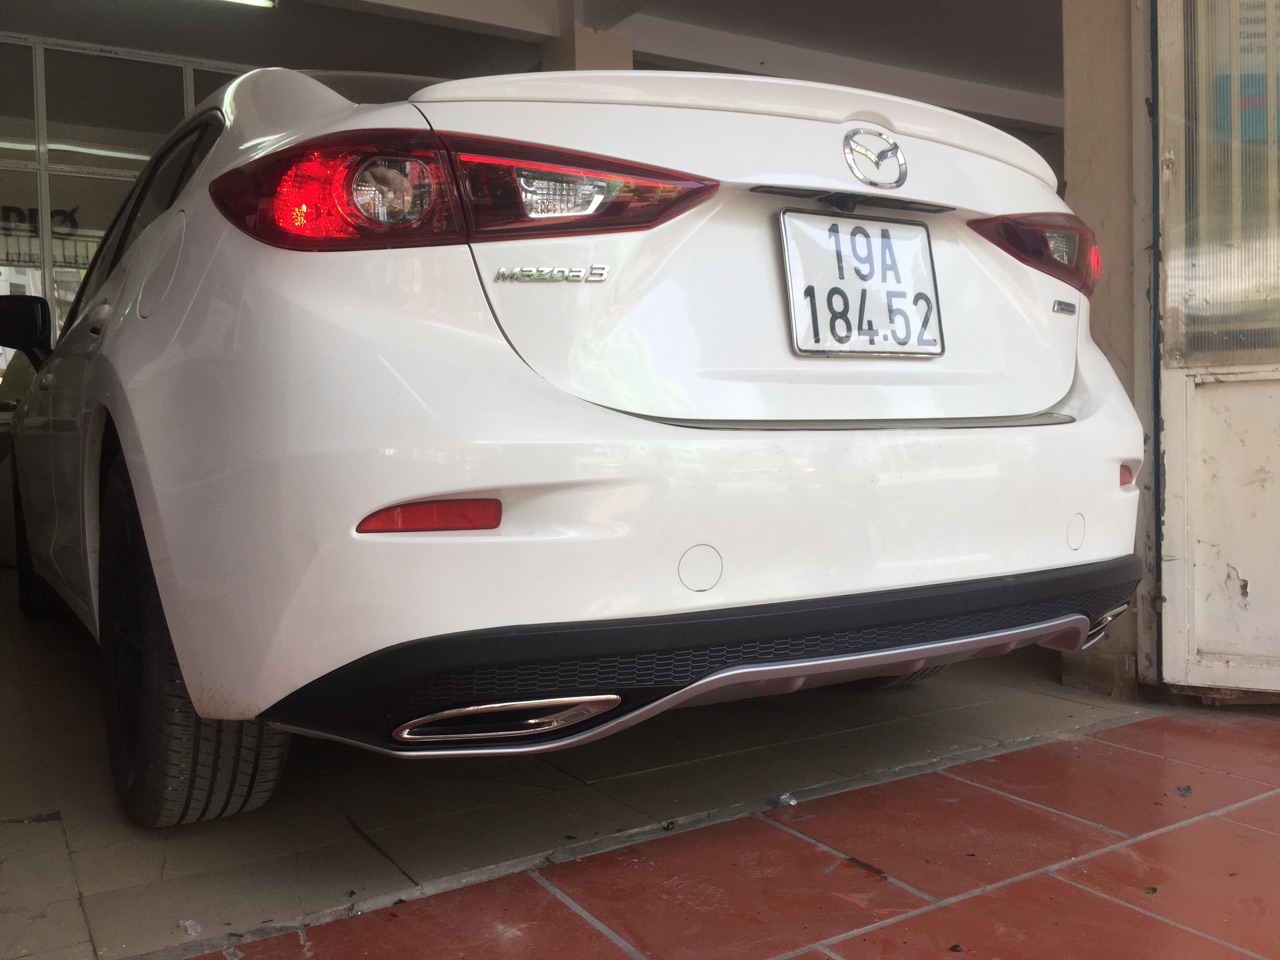 Mazda 3 2018 độ lip po mẫu Mazda 6